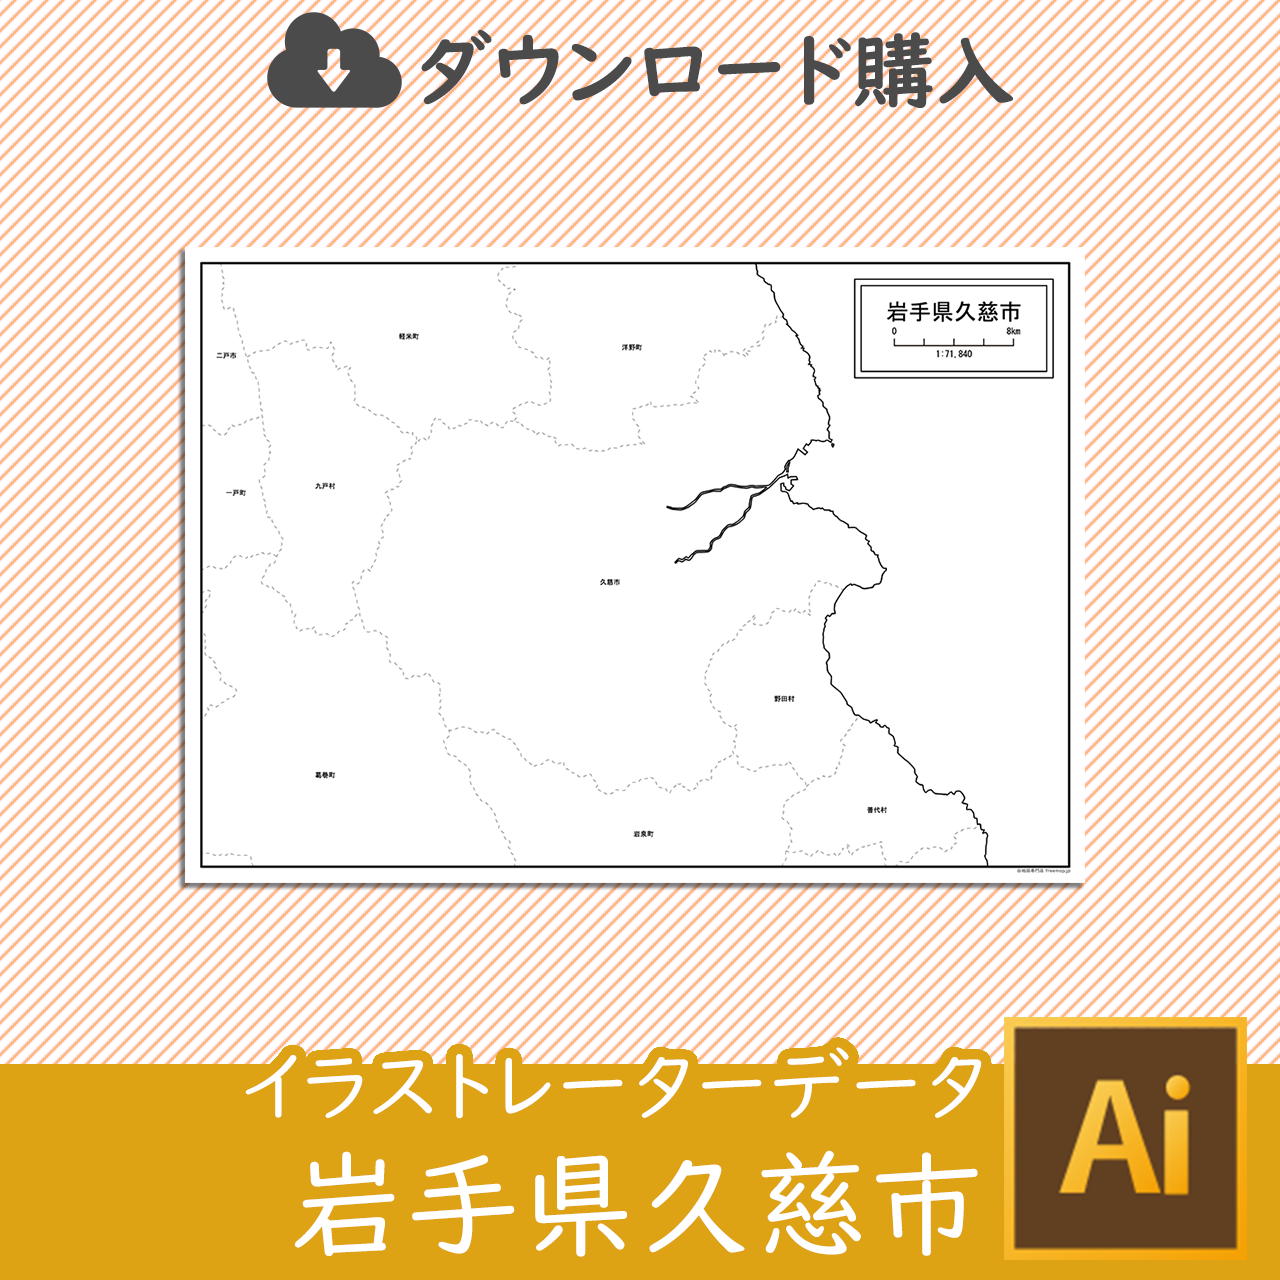 久慈市のaiデータのサムネイル画像